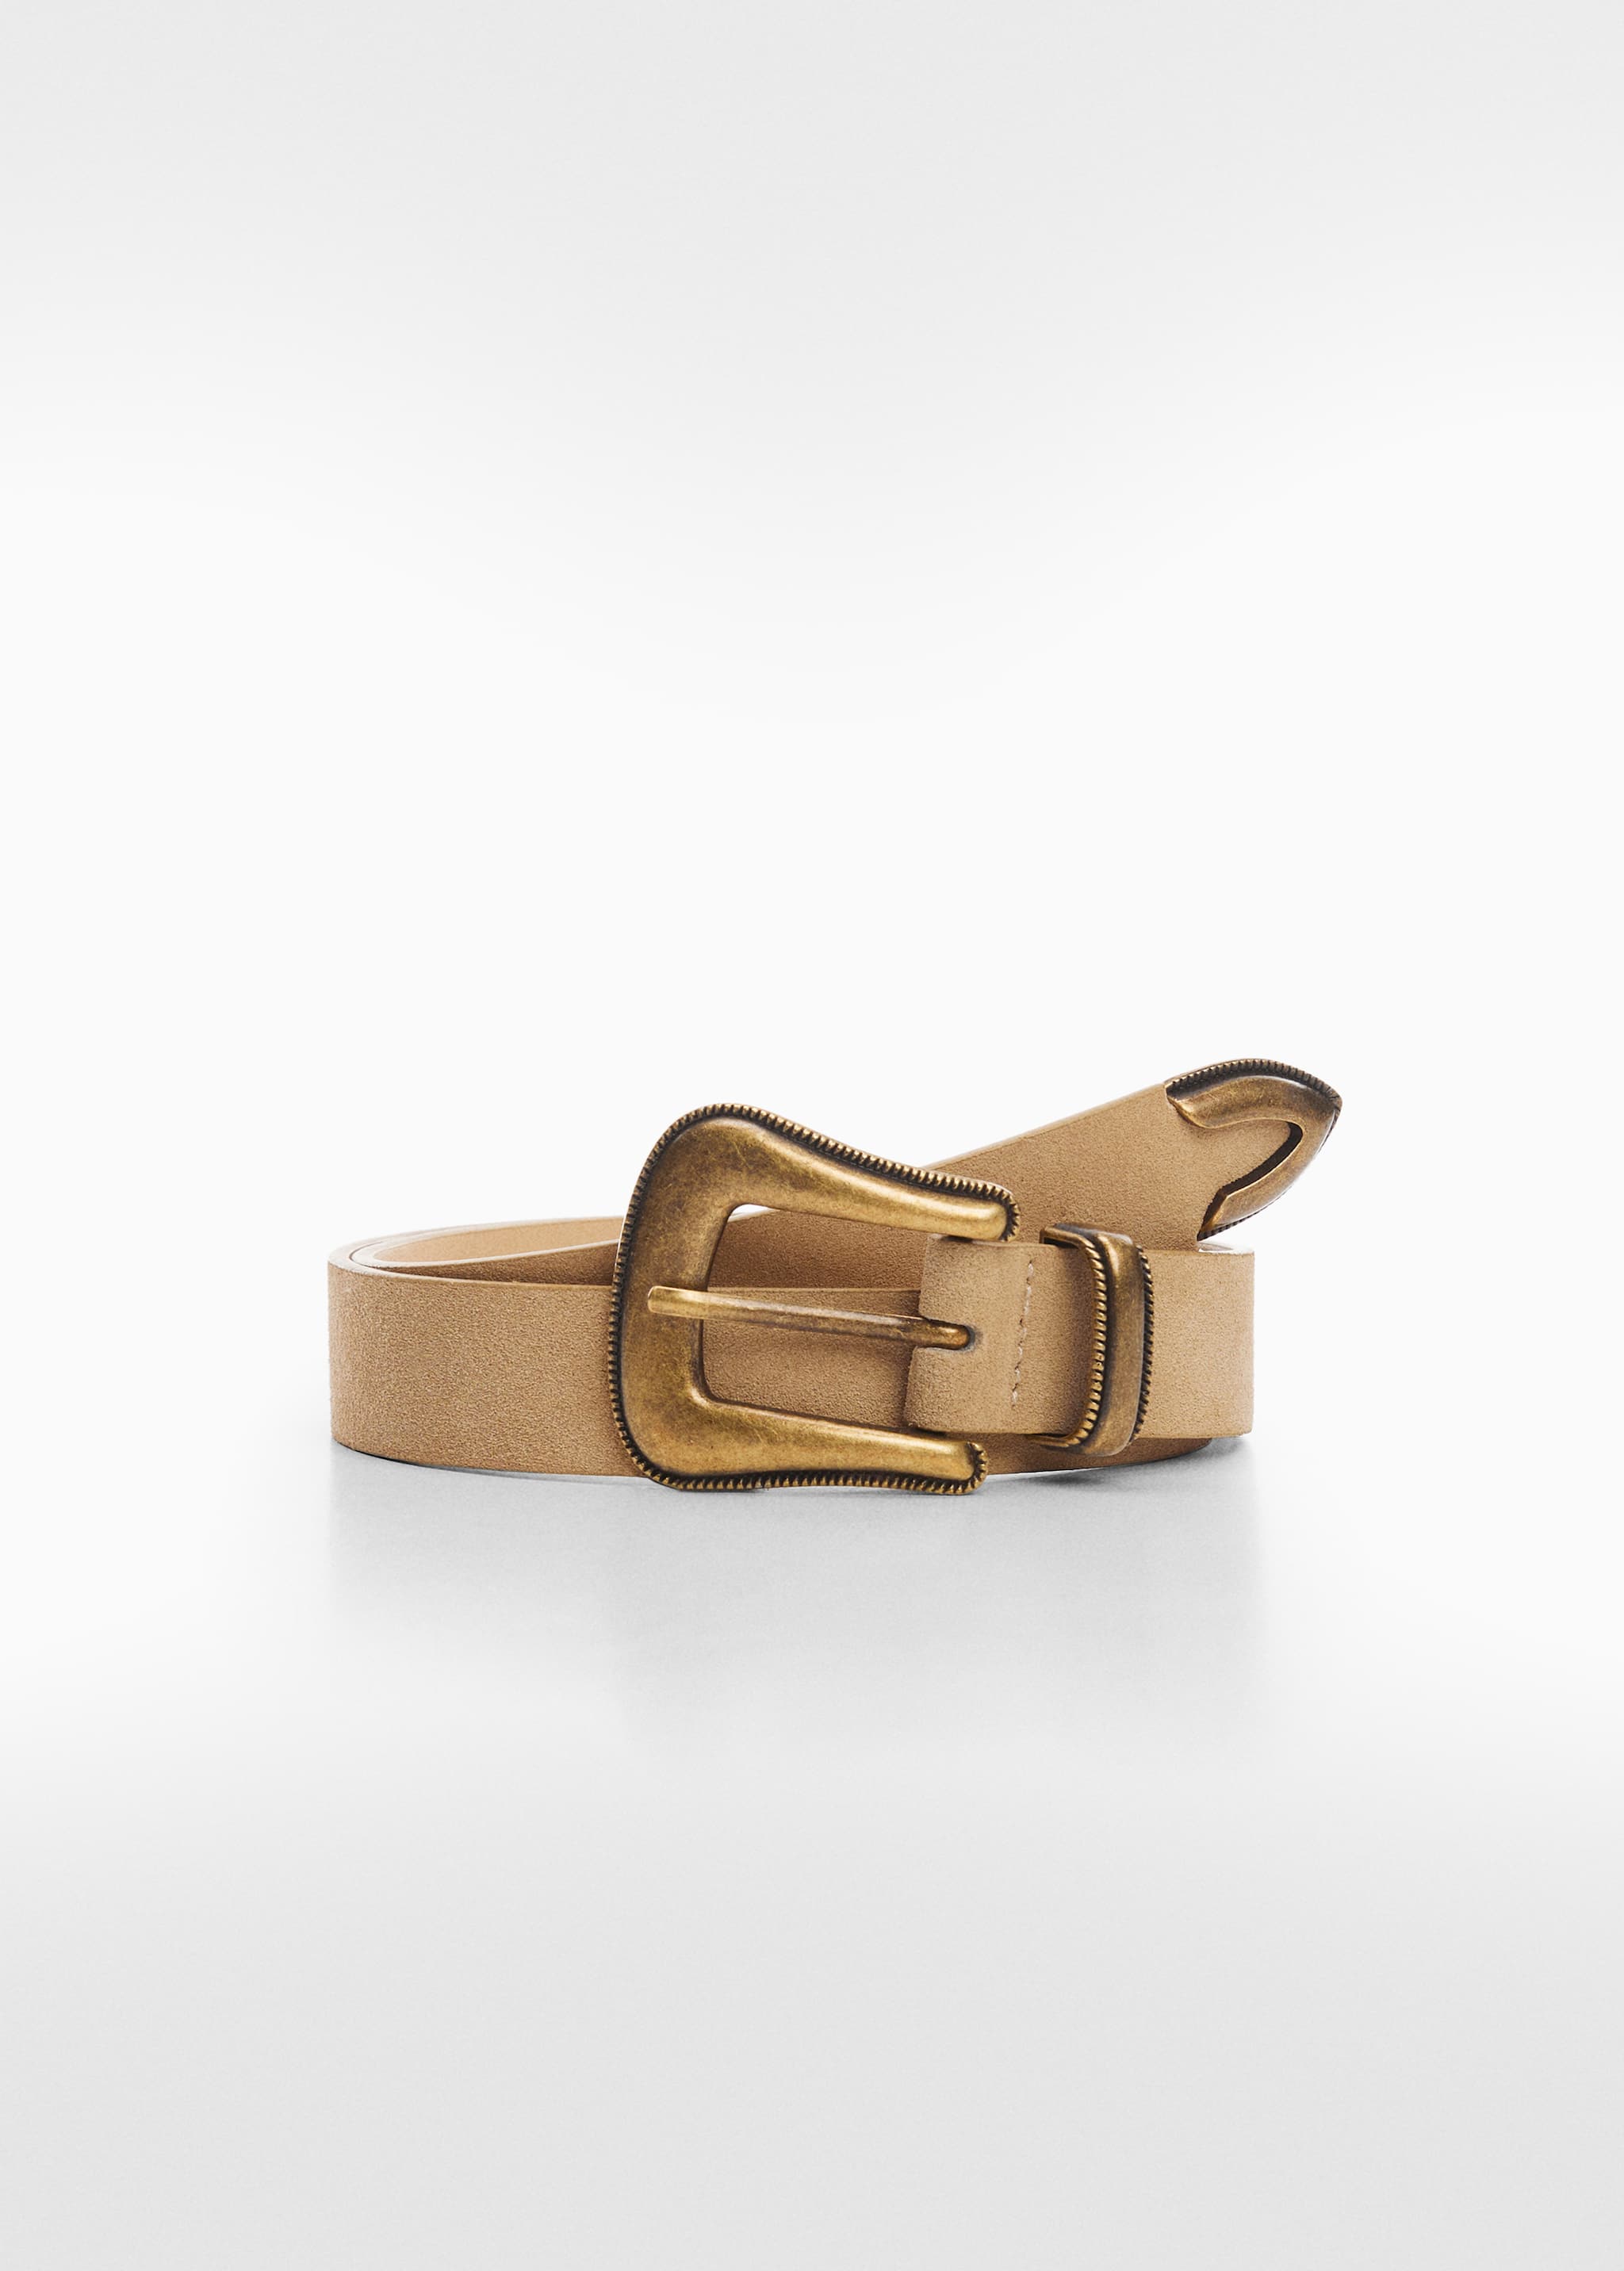 حزام جلدي بمشبك - منتج دون نموذج